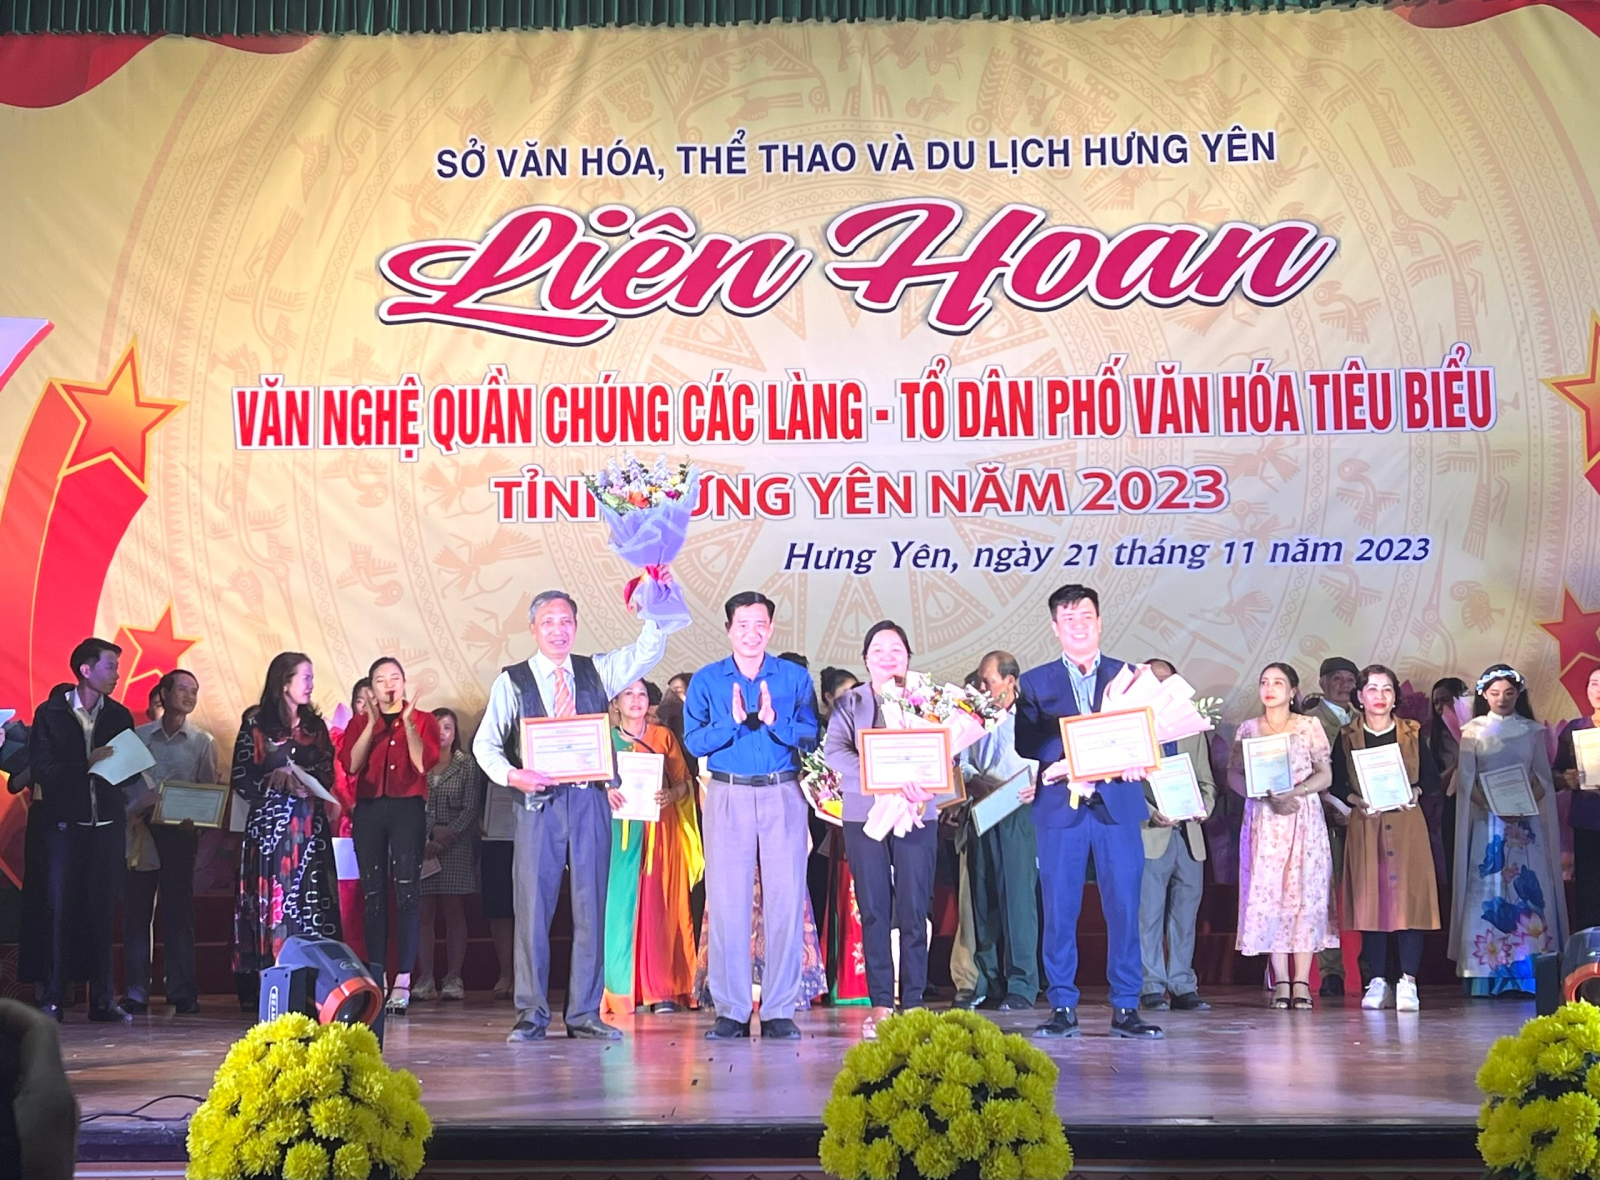 Thành phố Hưng Yên đạt giải nhì toàn đoàn tại Liên hoan Văn nghệ  quần chúng các làng - tổ dân phố văn hoá tiêu biểu tỉnh Hưng Yên năm 2023